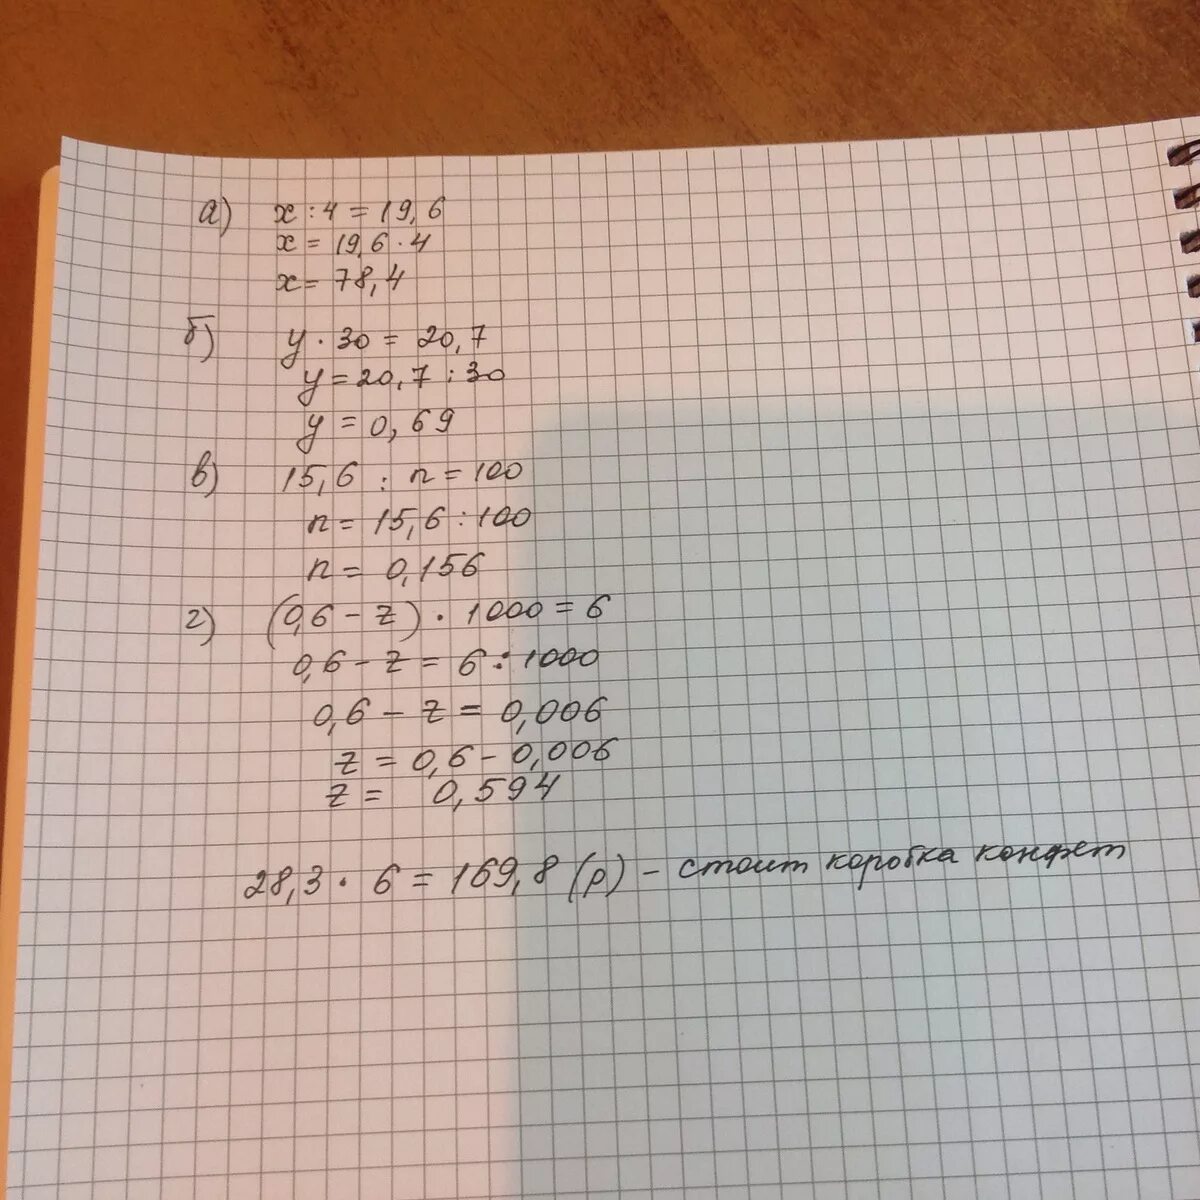 4x 7 3 x 1 решение. 20:Х=4:6. X:6=6 решение. -19-6(Х-6)=29х. A) X / 4 =19.6: 6) Y * 30 = 20, 7 B) 15.6 / N =100: R) (0, 6 - Z) * 1000 = 6.